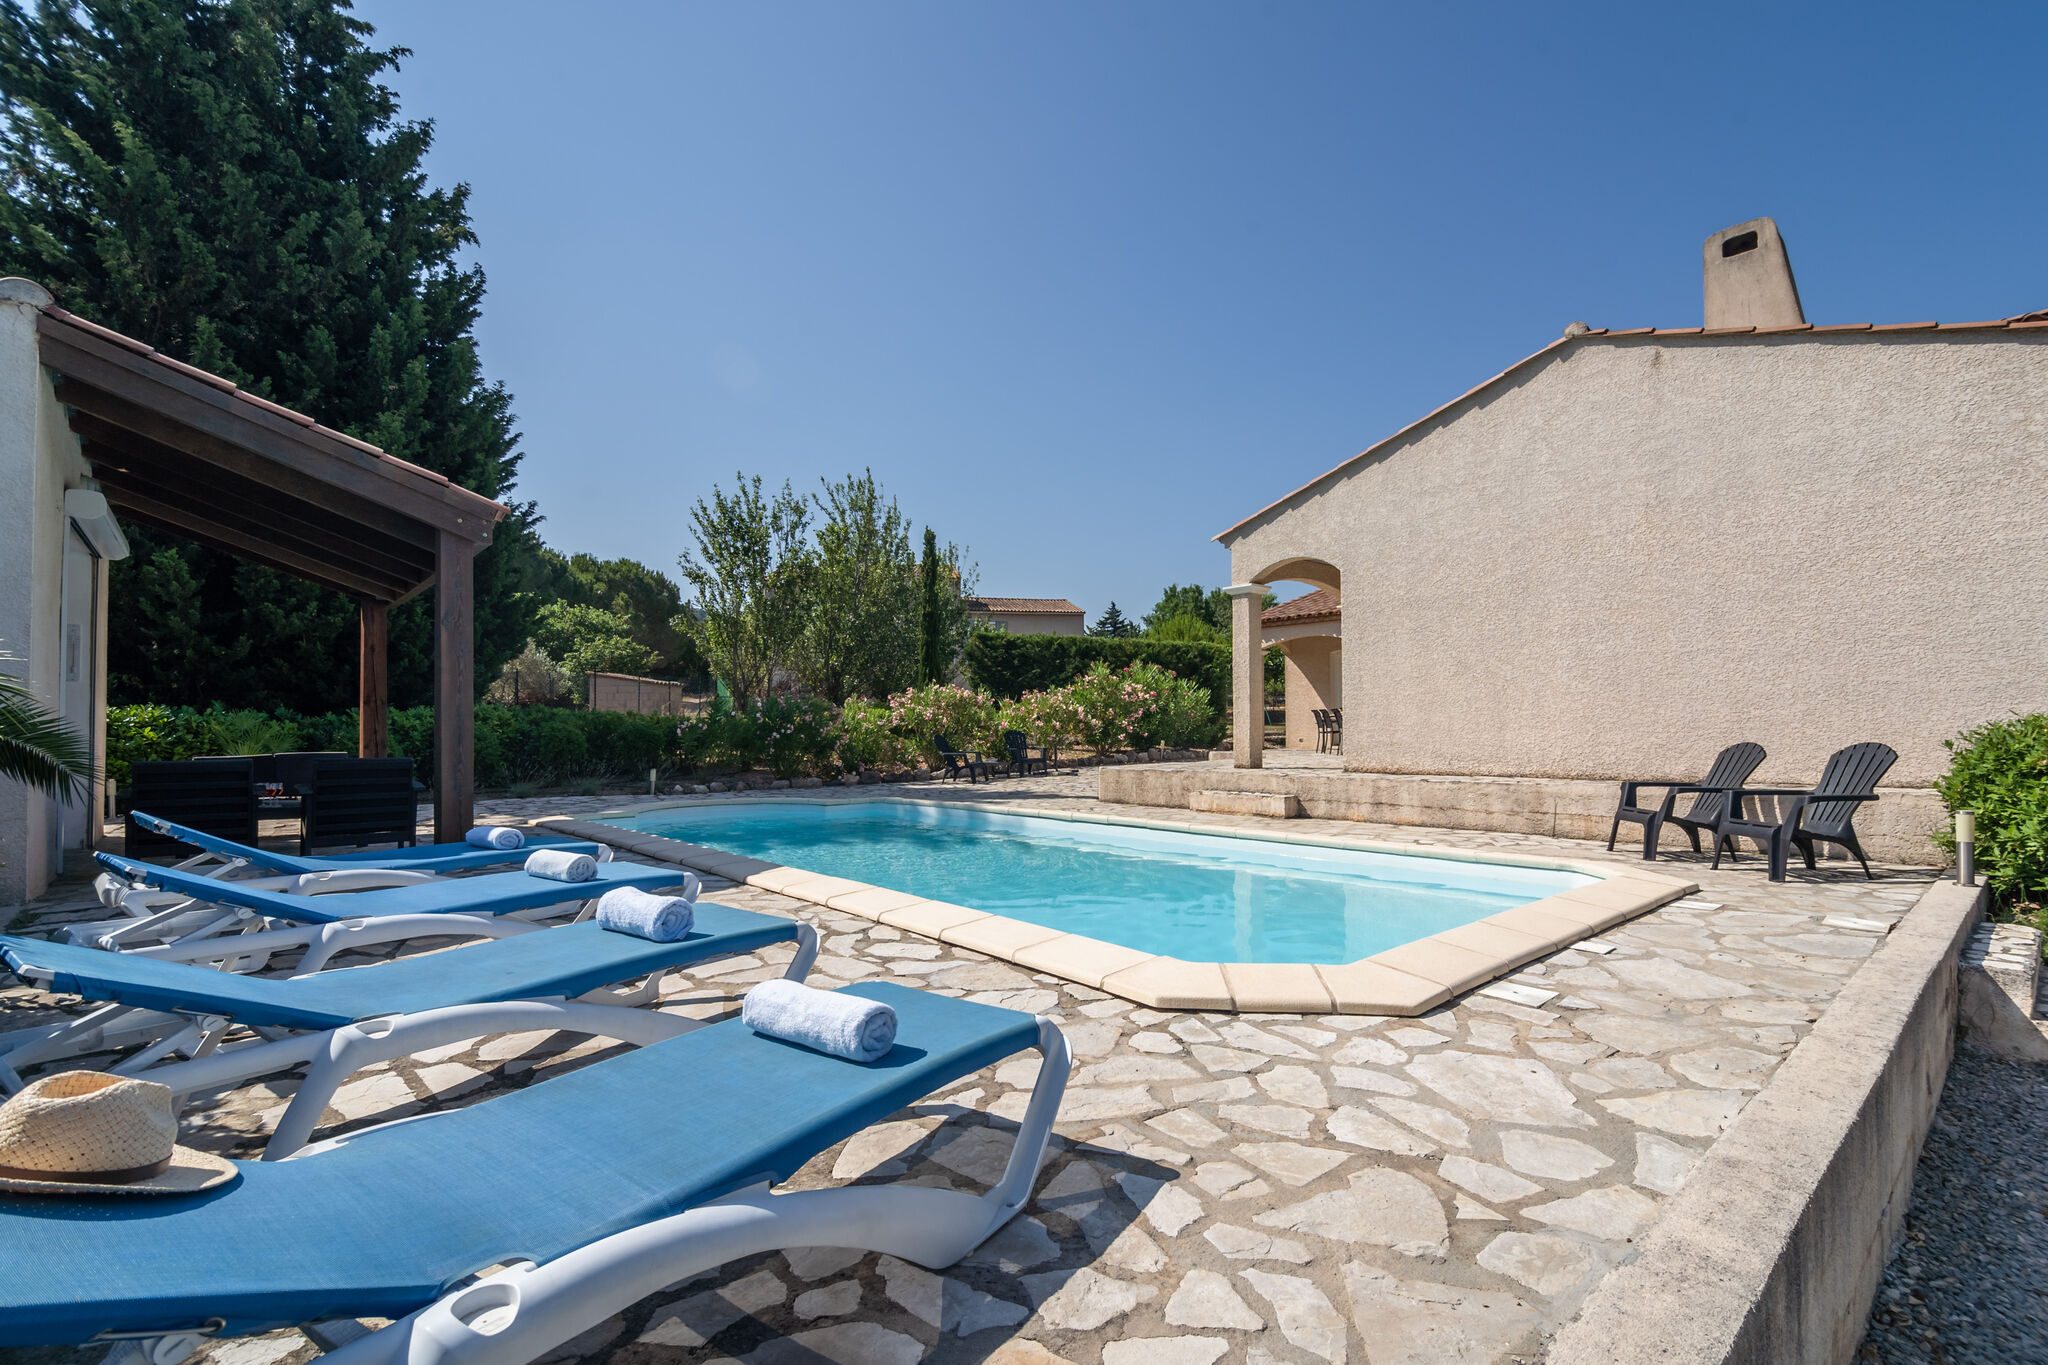 Royale en luxe villa, verwarmd privé zwembad, fantastisch uitzicht en privacy